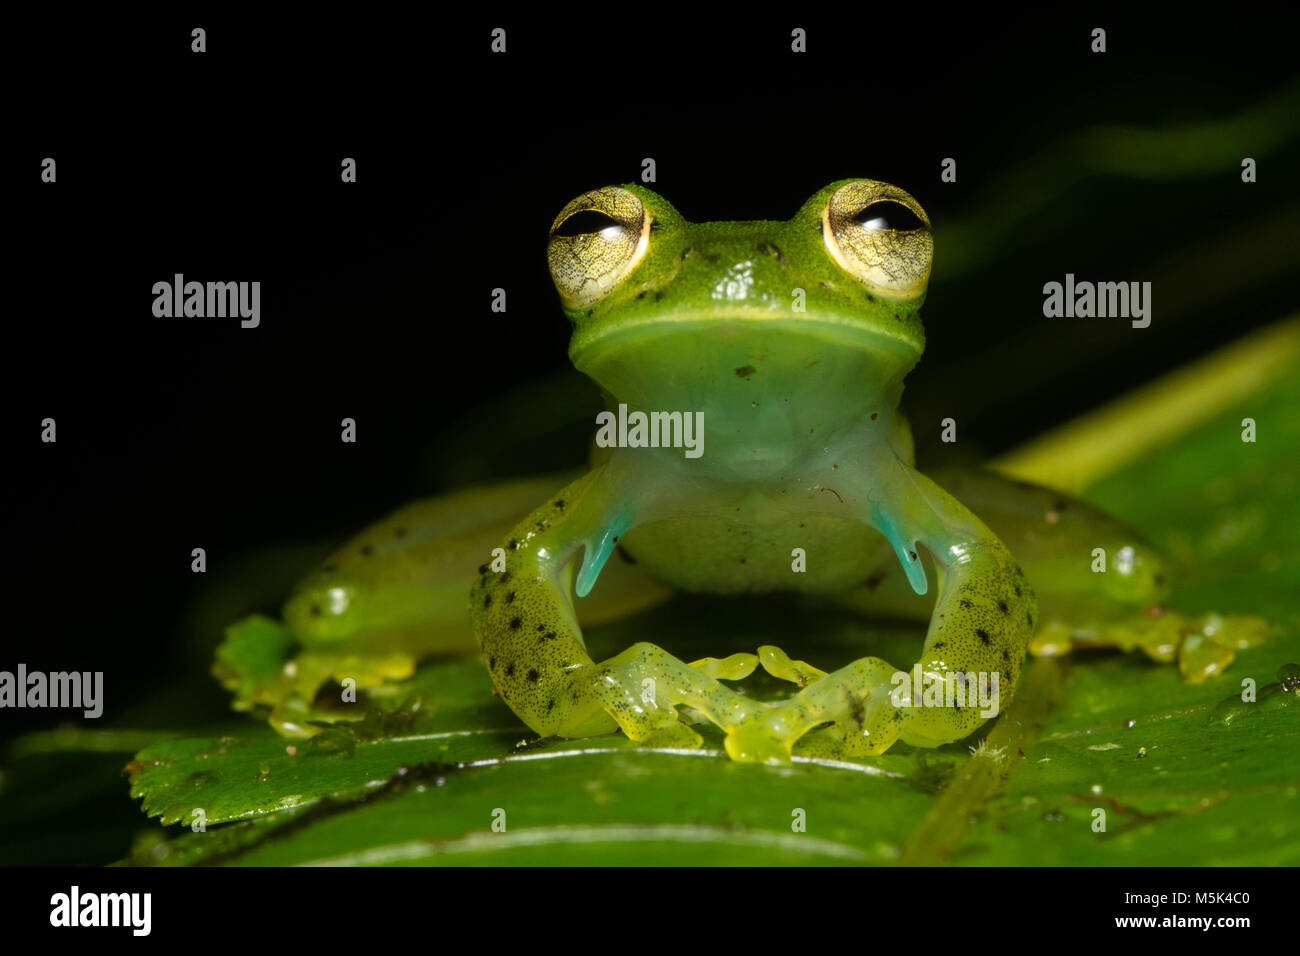 Der Smaragd Glas Frosch (Espdarana prosoblepon) aus Ecuador. Dieses ist männlich wie durch seine Oberarmkopf Stacheln in seine Achselhöhlen belegt. Stockfoto